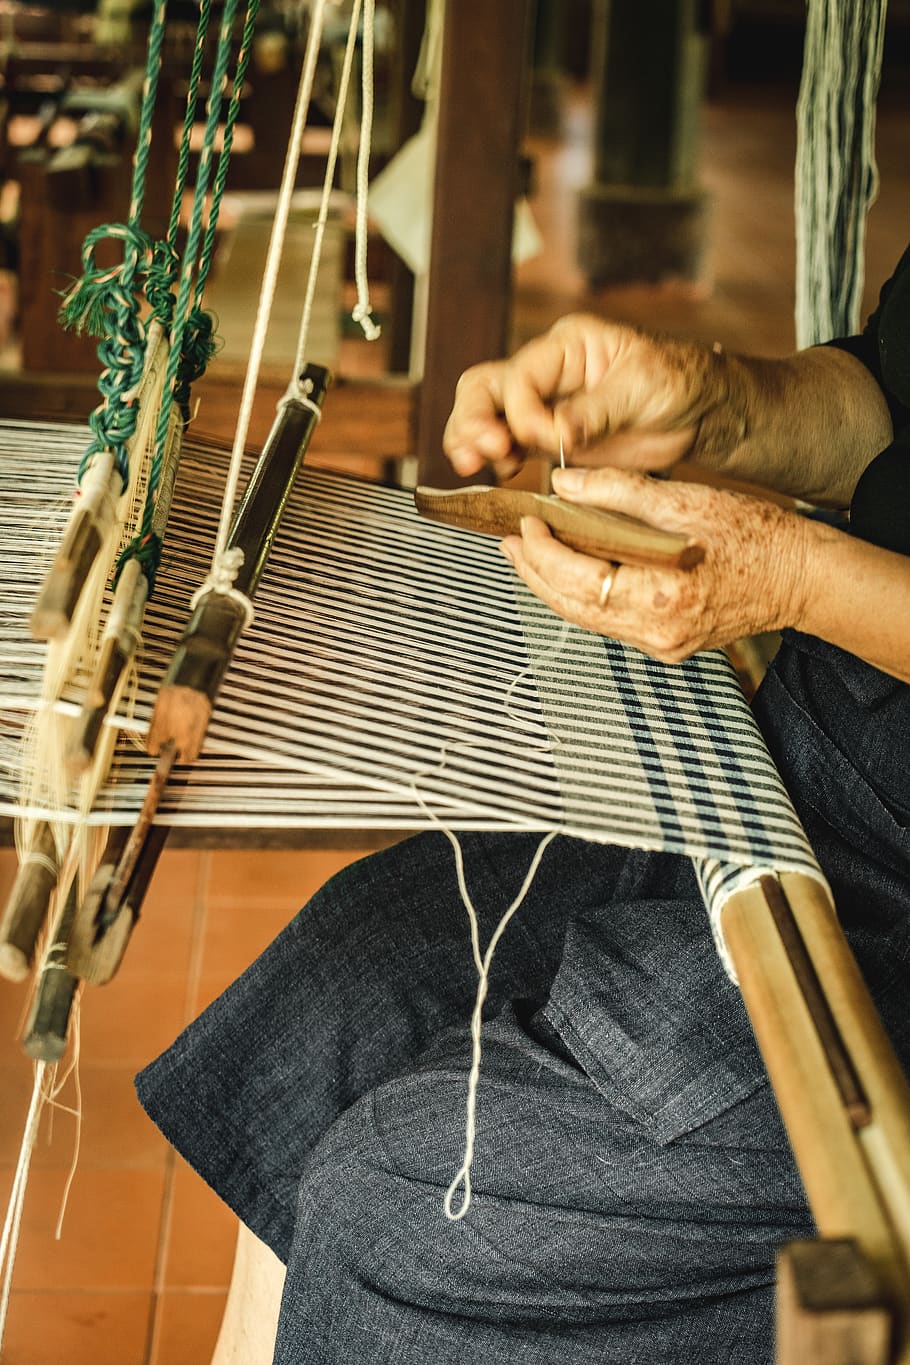 tejido, mano, alfombra, telar, hecho a mano, antiguo, tradicional, patrón, artesanía, trabajo